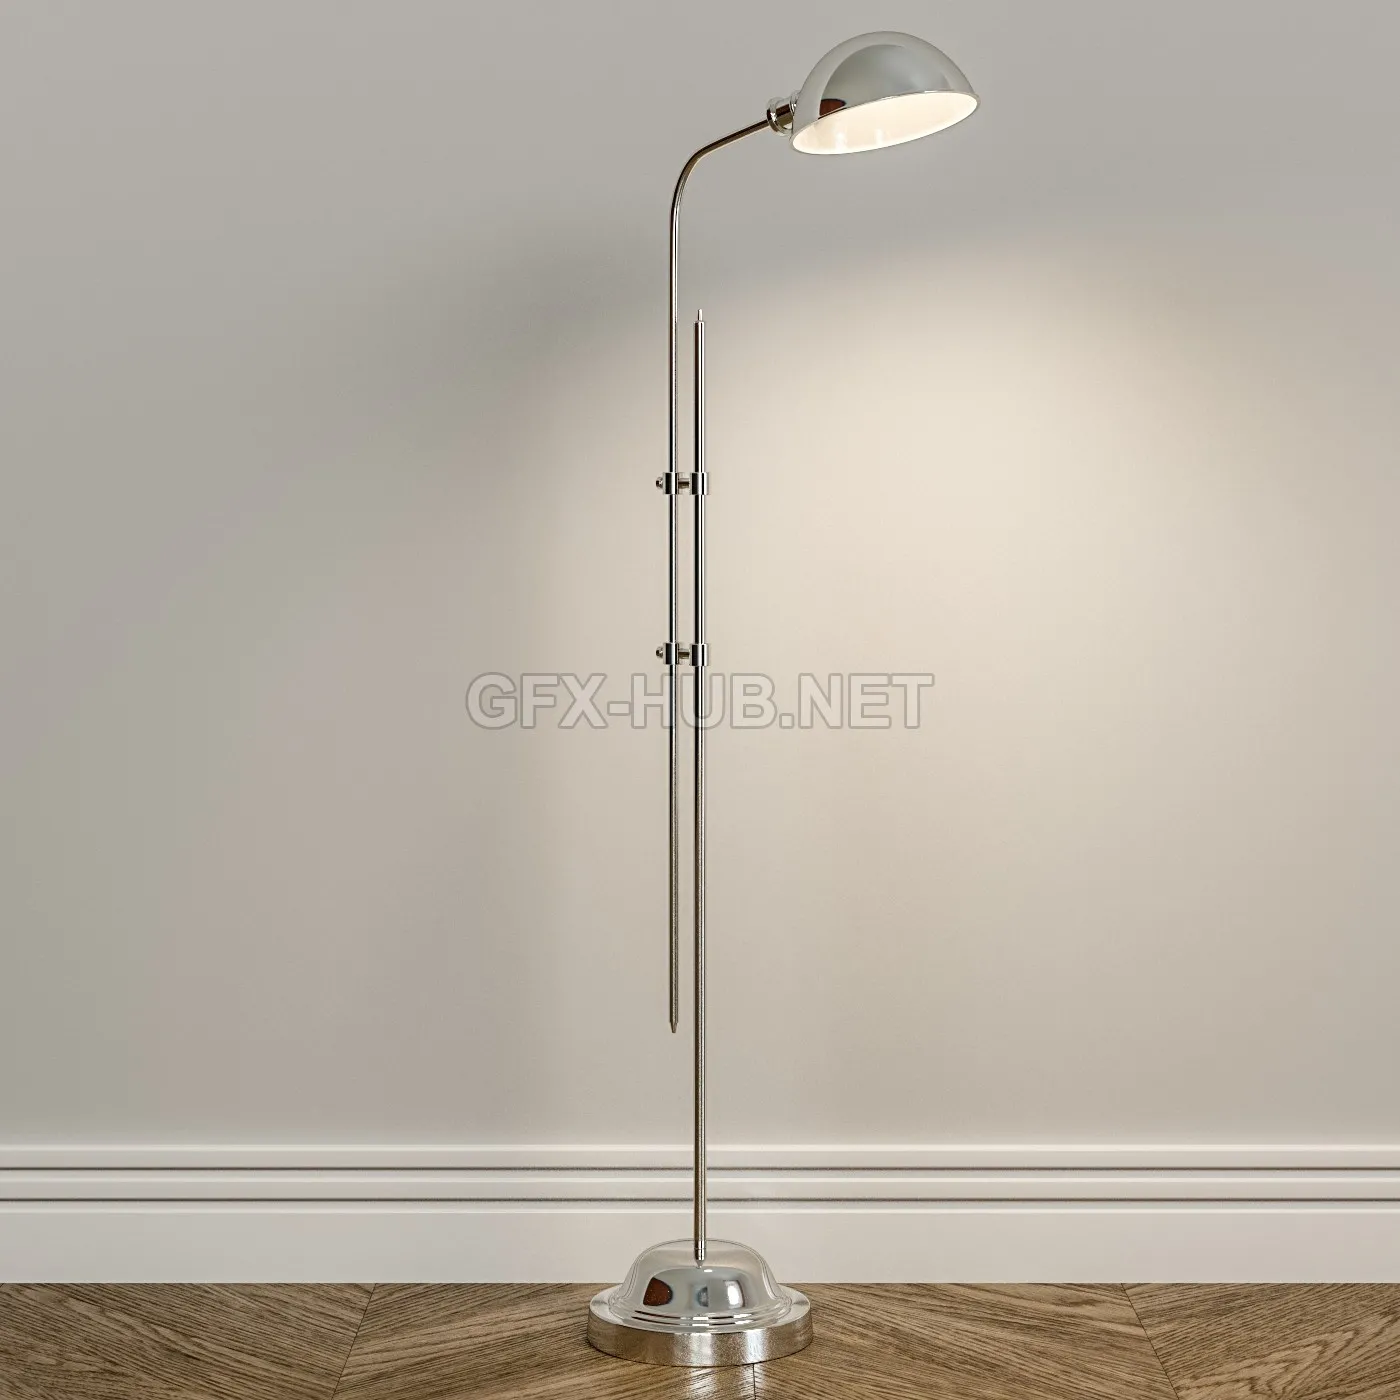 Eichholtz floor lamp Greenwich – 5288